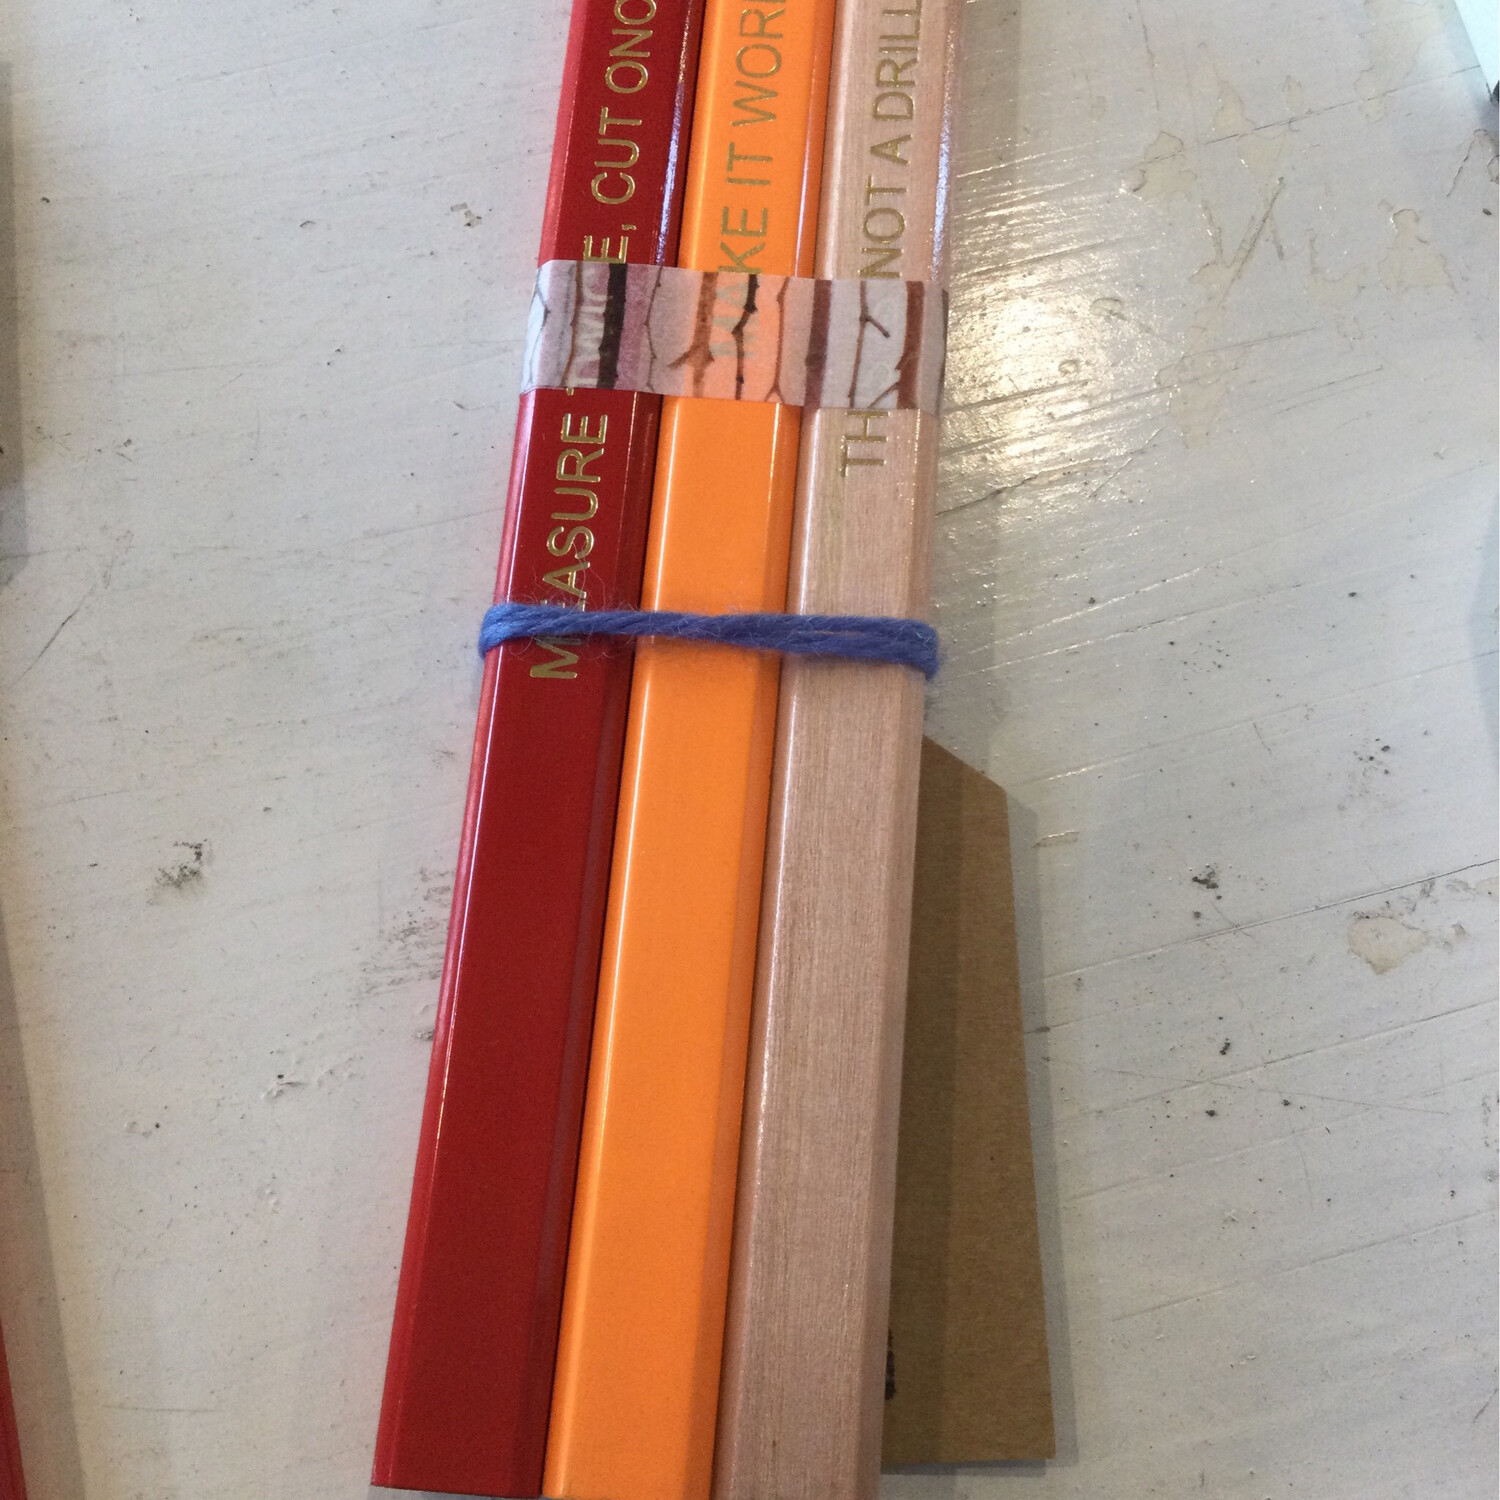 DIY Pencil Carpenters Pencil Wooden Pencils Set Of 3